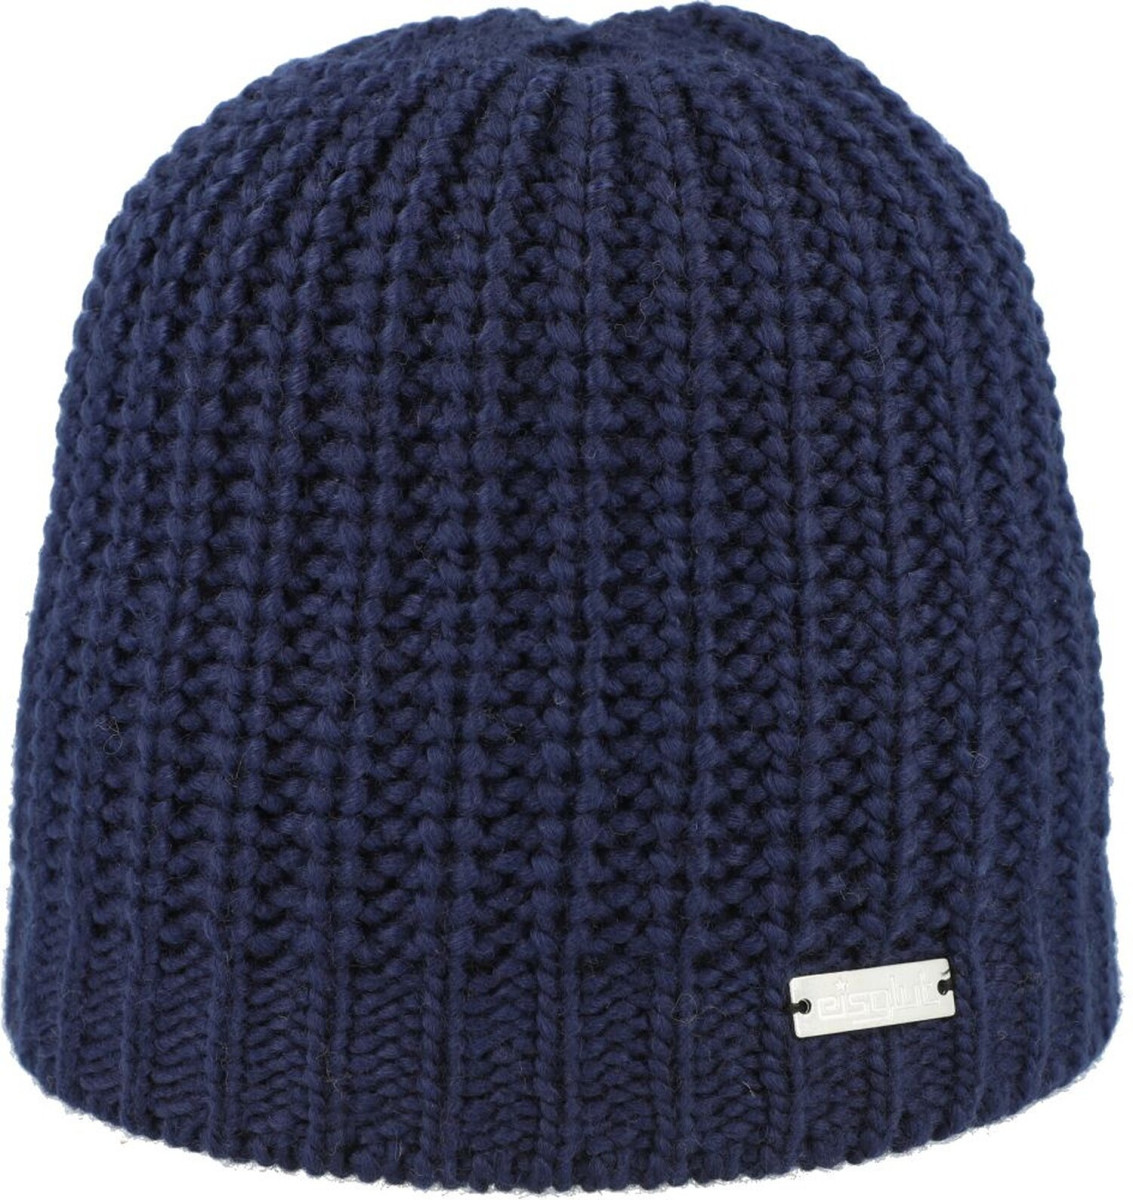 Mütze dunkelblau